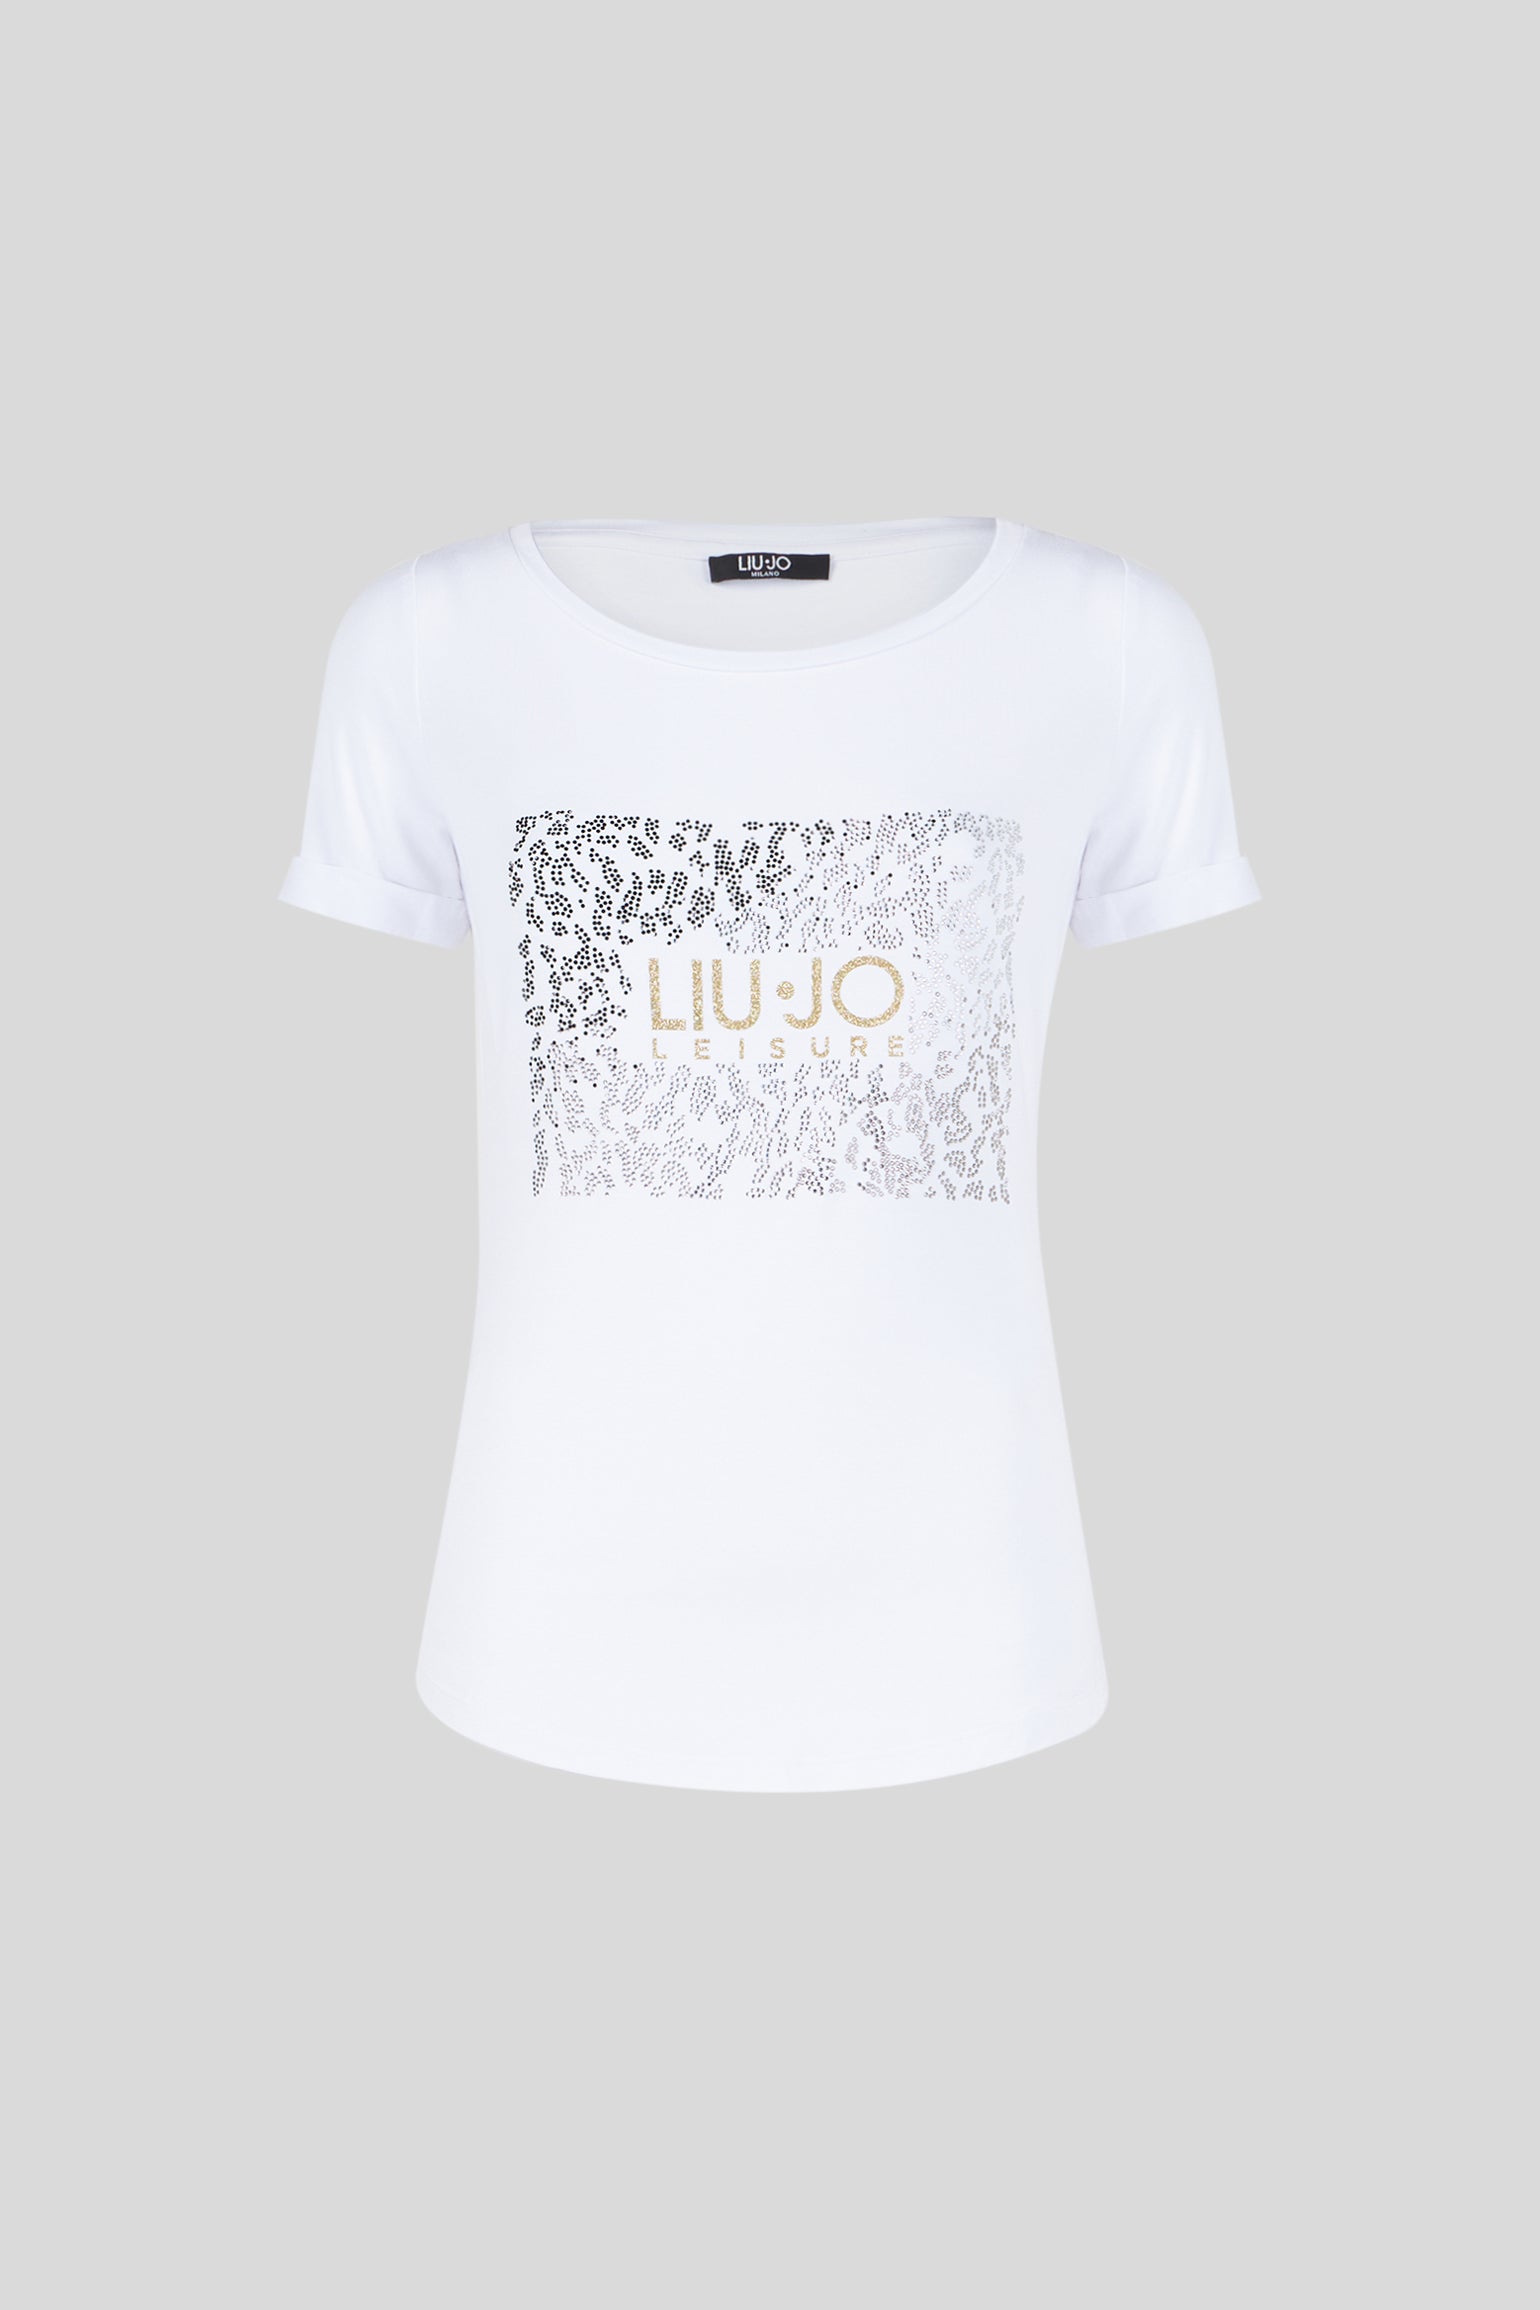 LIU JO White T-shirt with Rhinestones